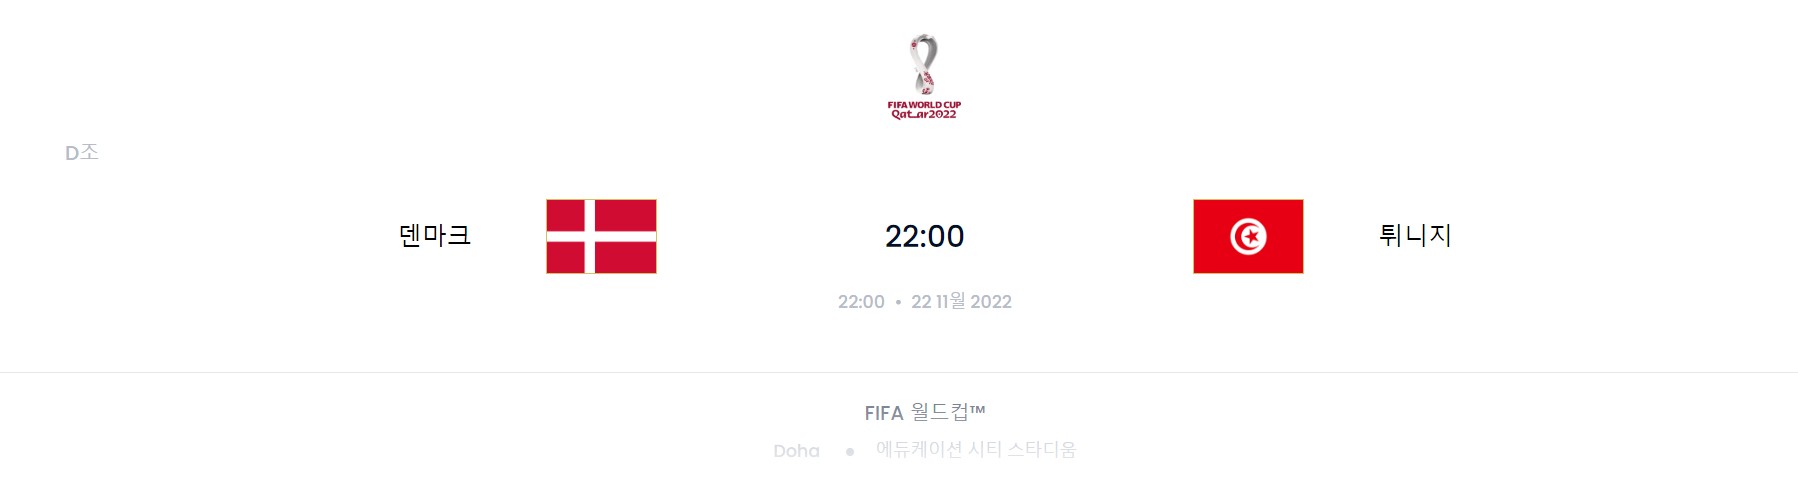 카타르 월드컵 D조 1경기 (덴마크 VS 튀니지)